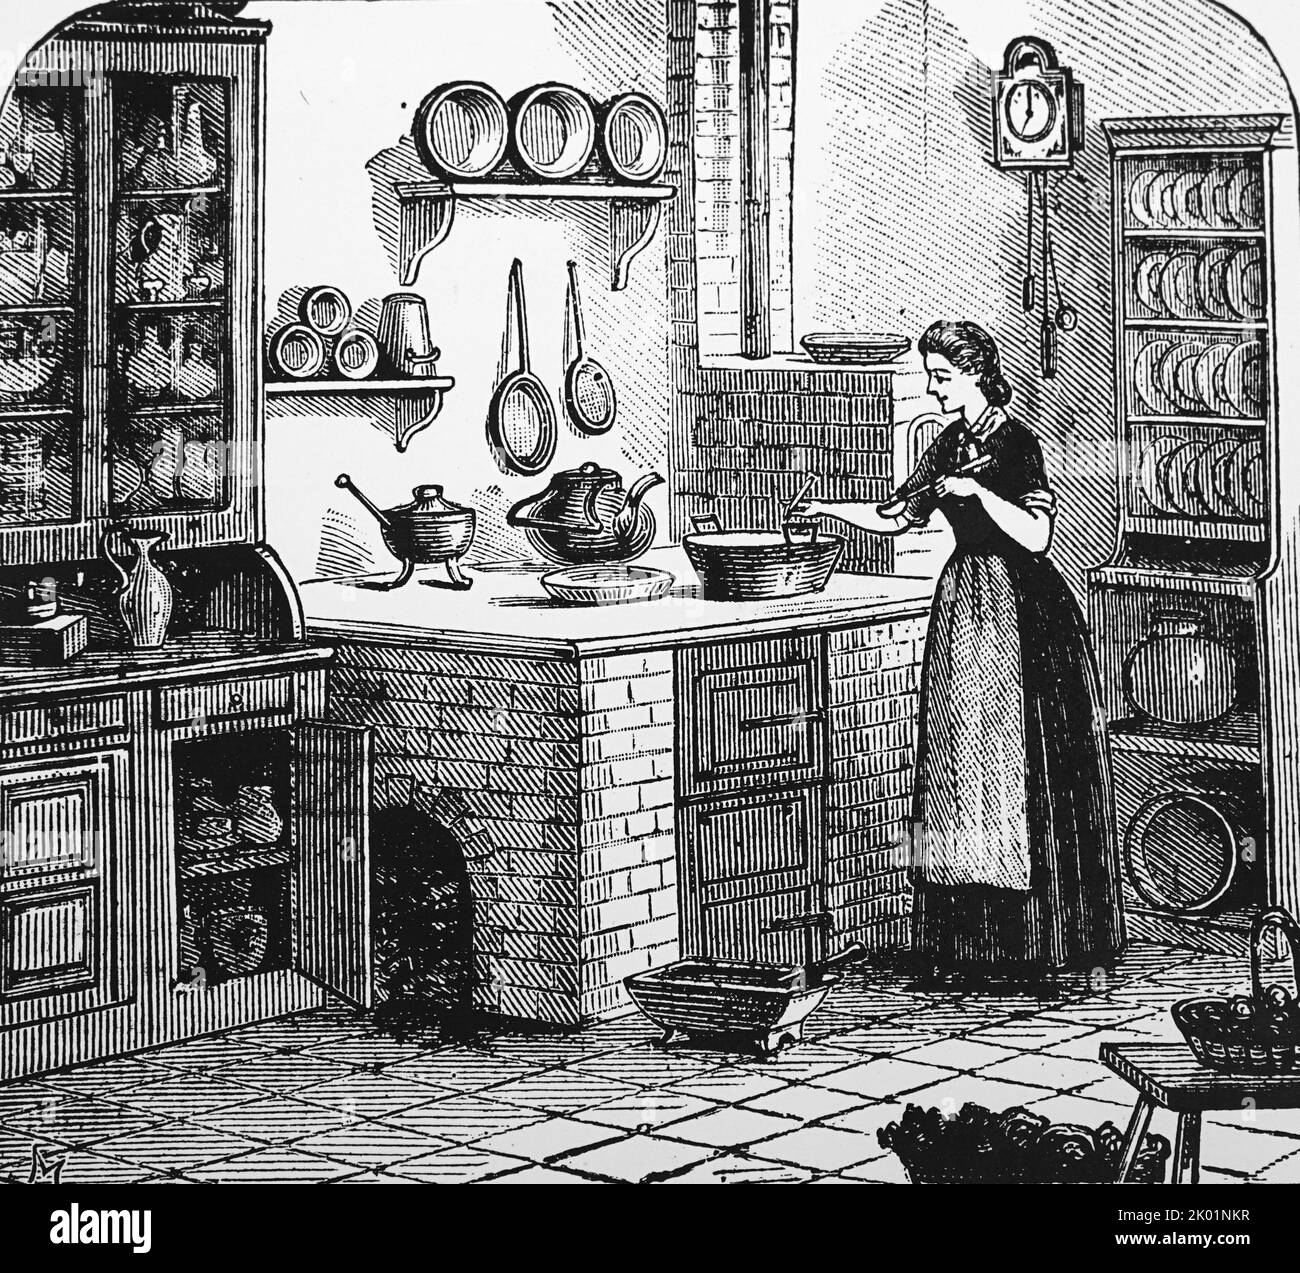 German kitchen scene. Stock Photo